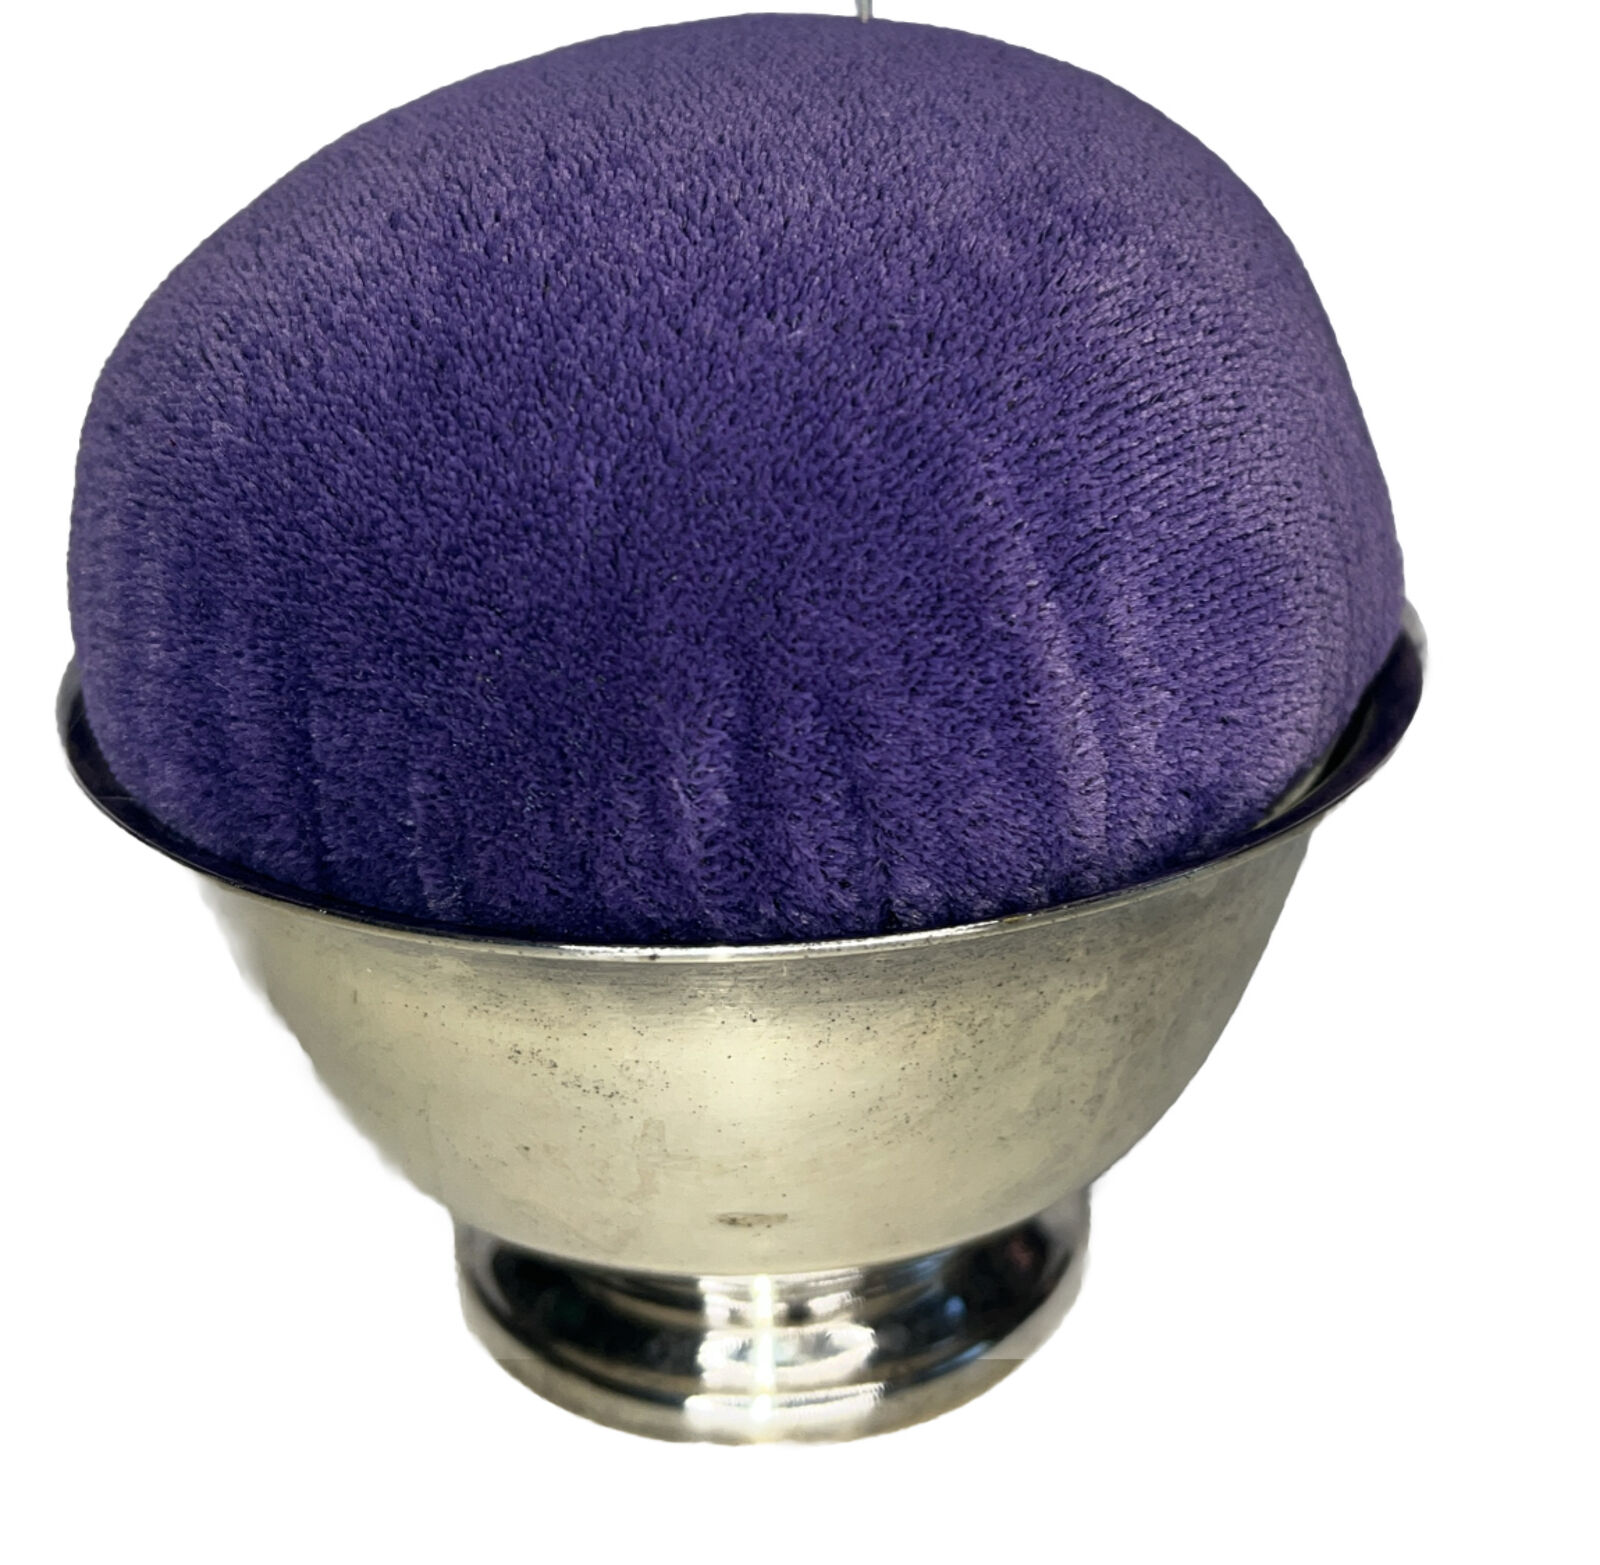 Vintage Silver Plated Pin Cushion In BartonPaul Revere Bowl Purple Velvet